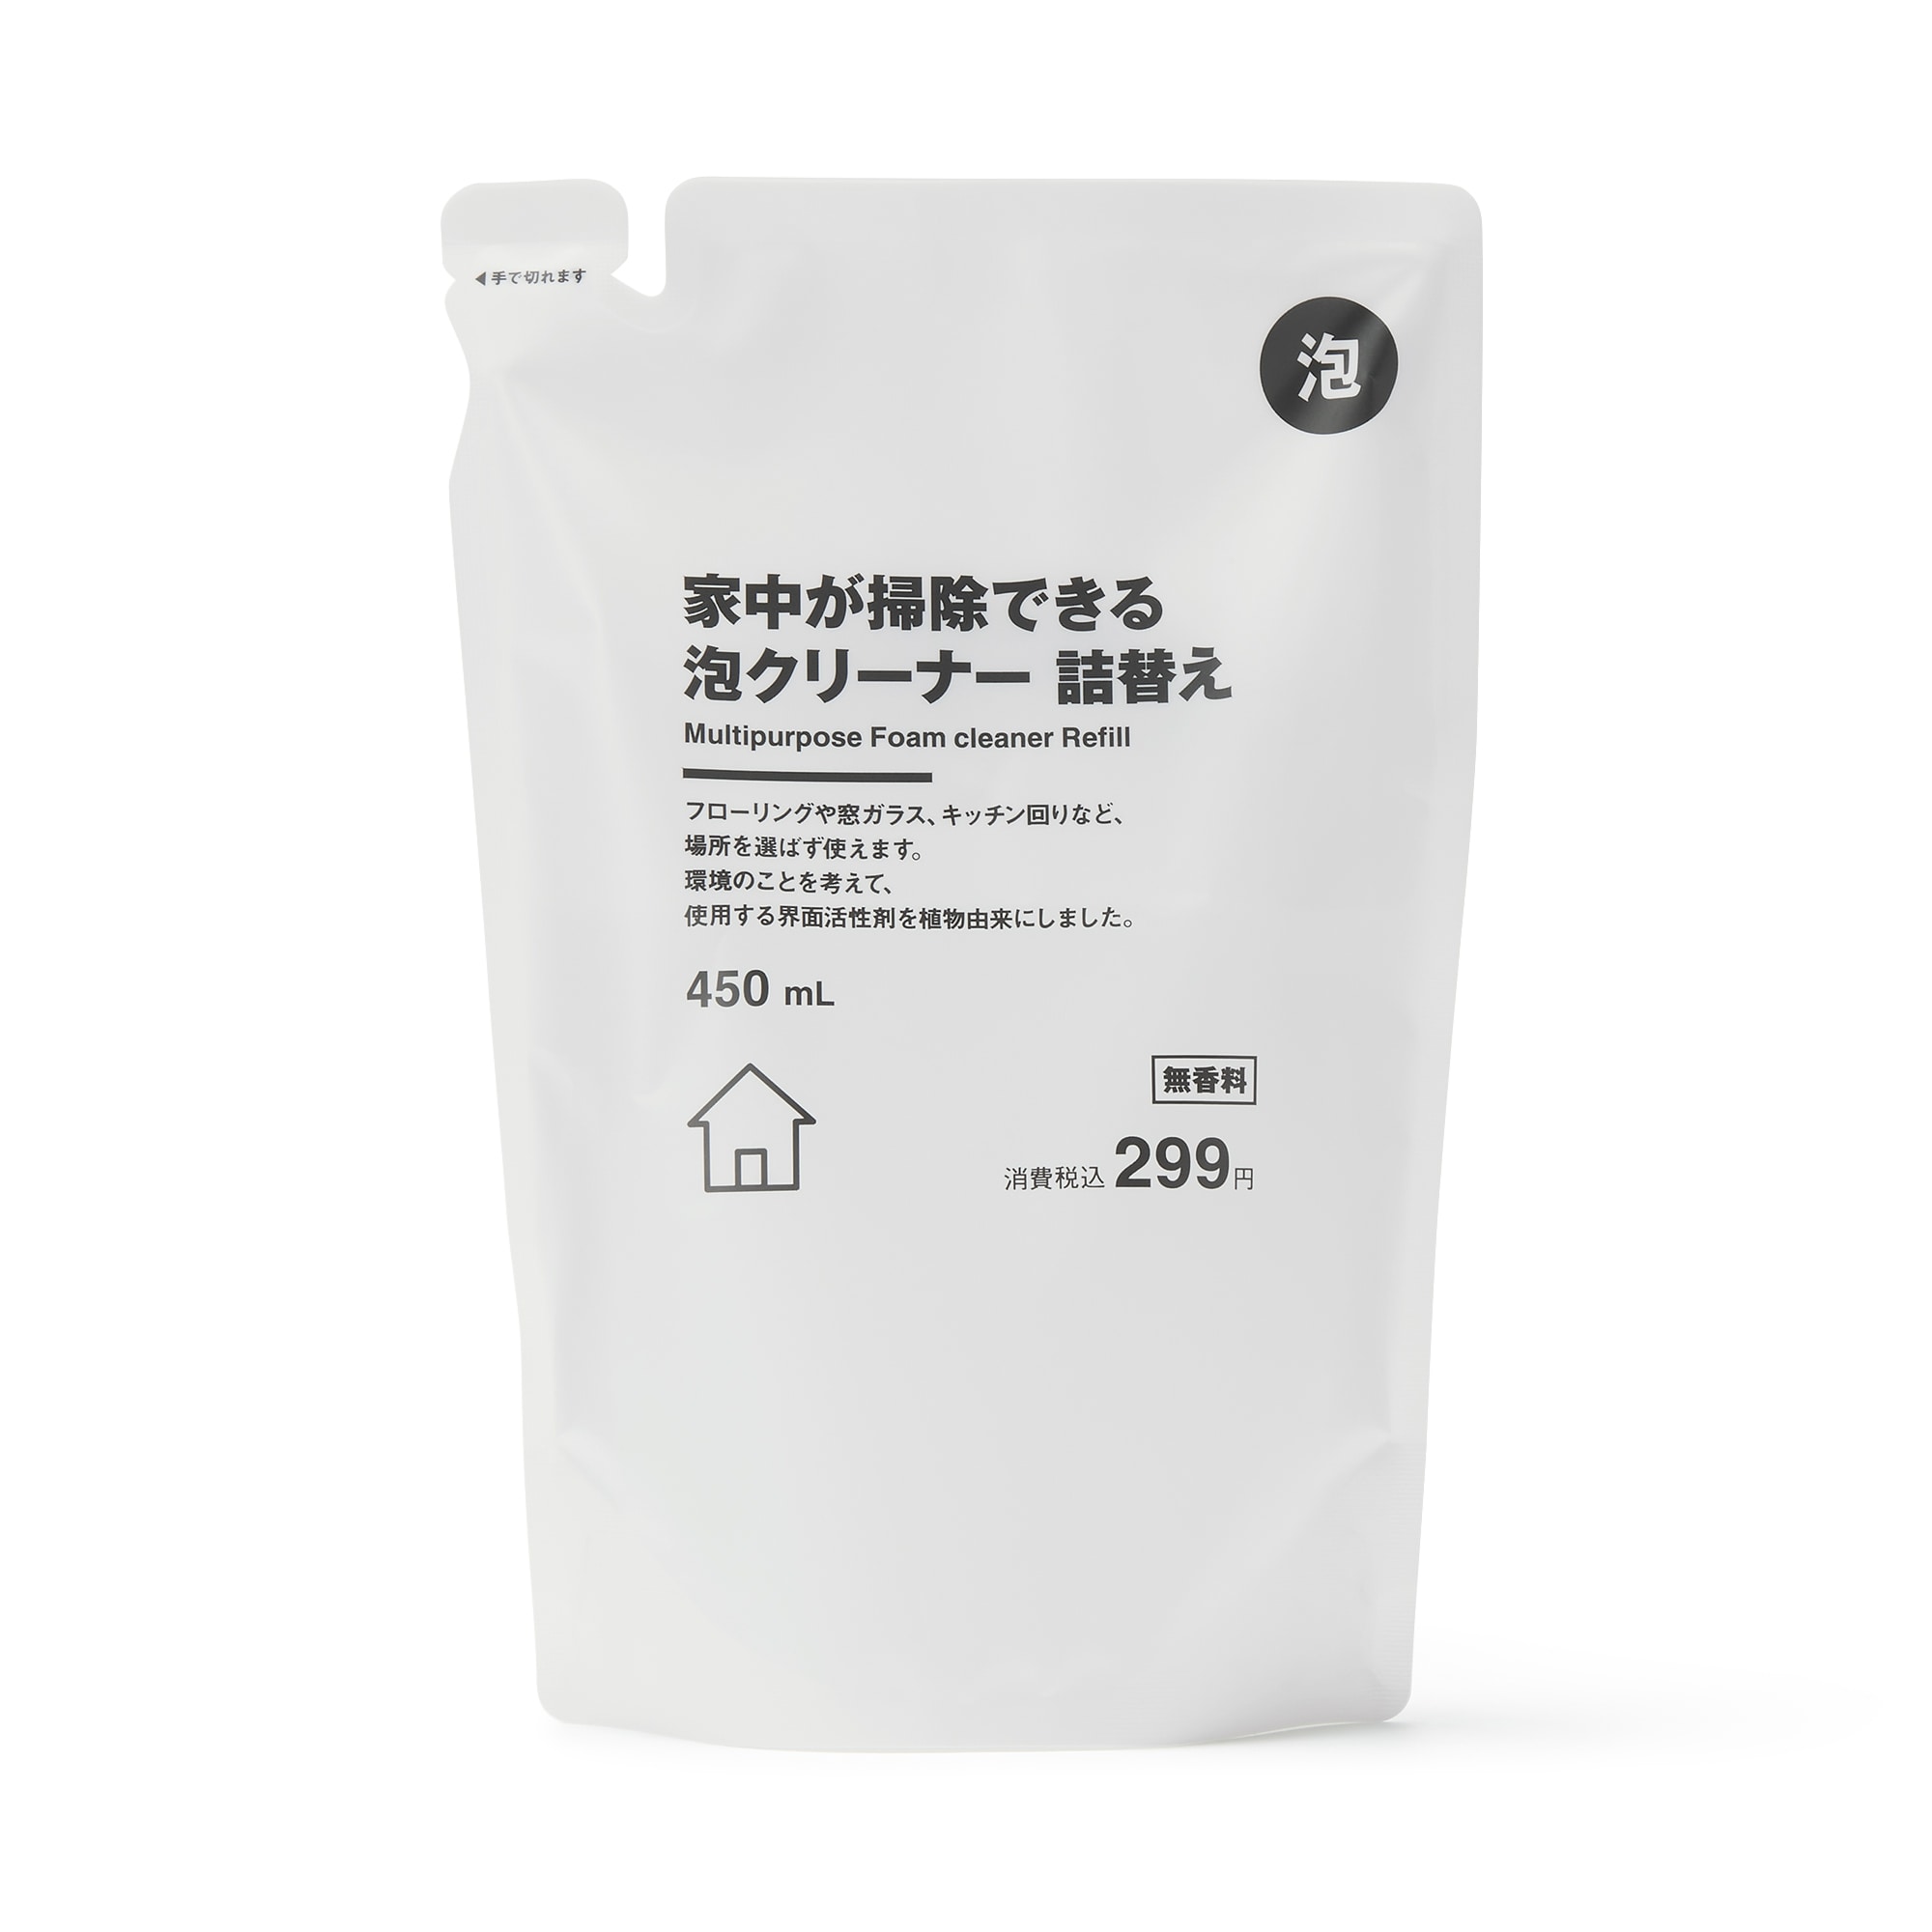 무인양품 일본 청소 세제 거품 클리너 리필용 450ml